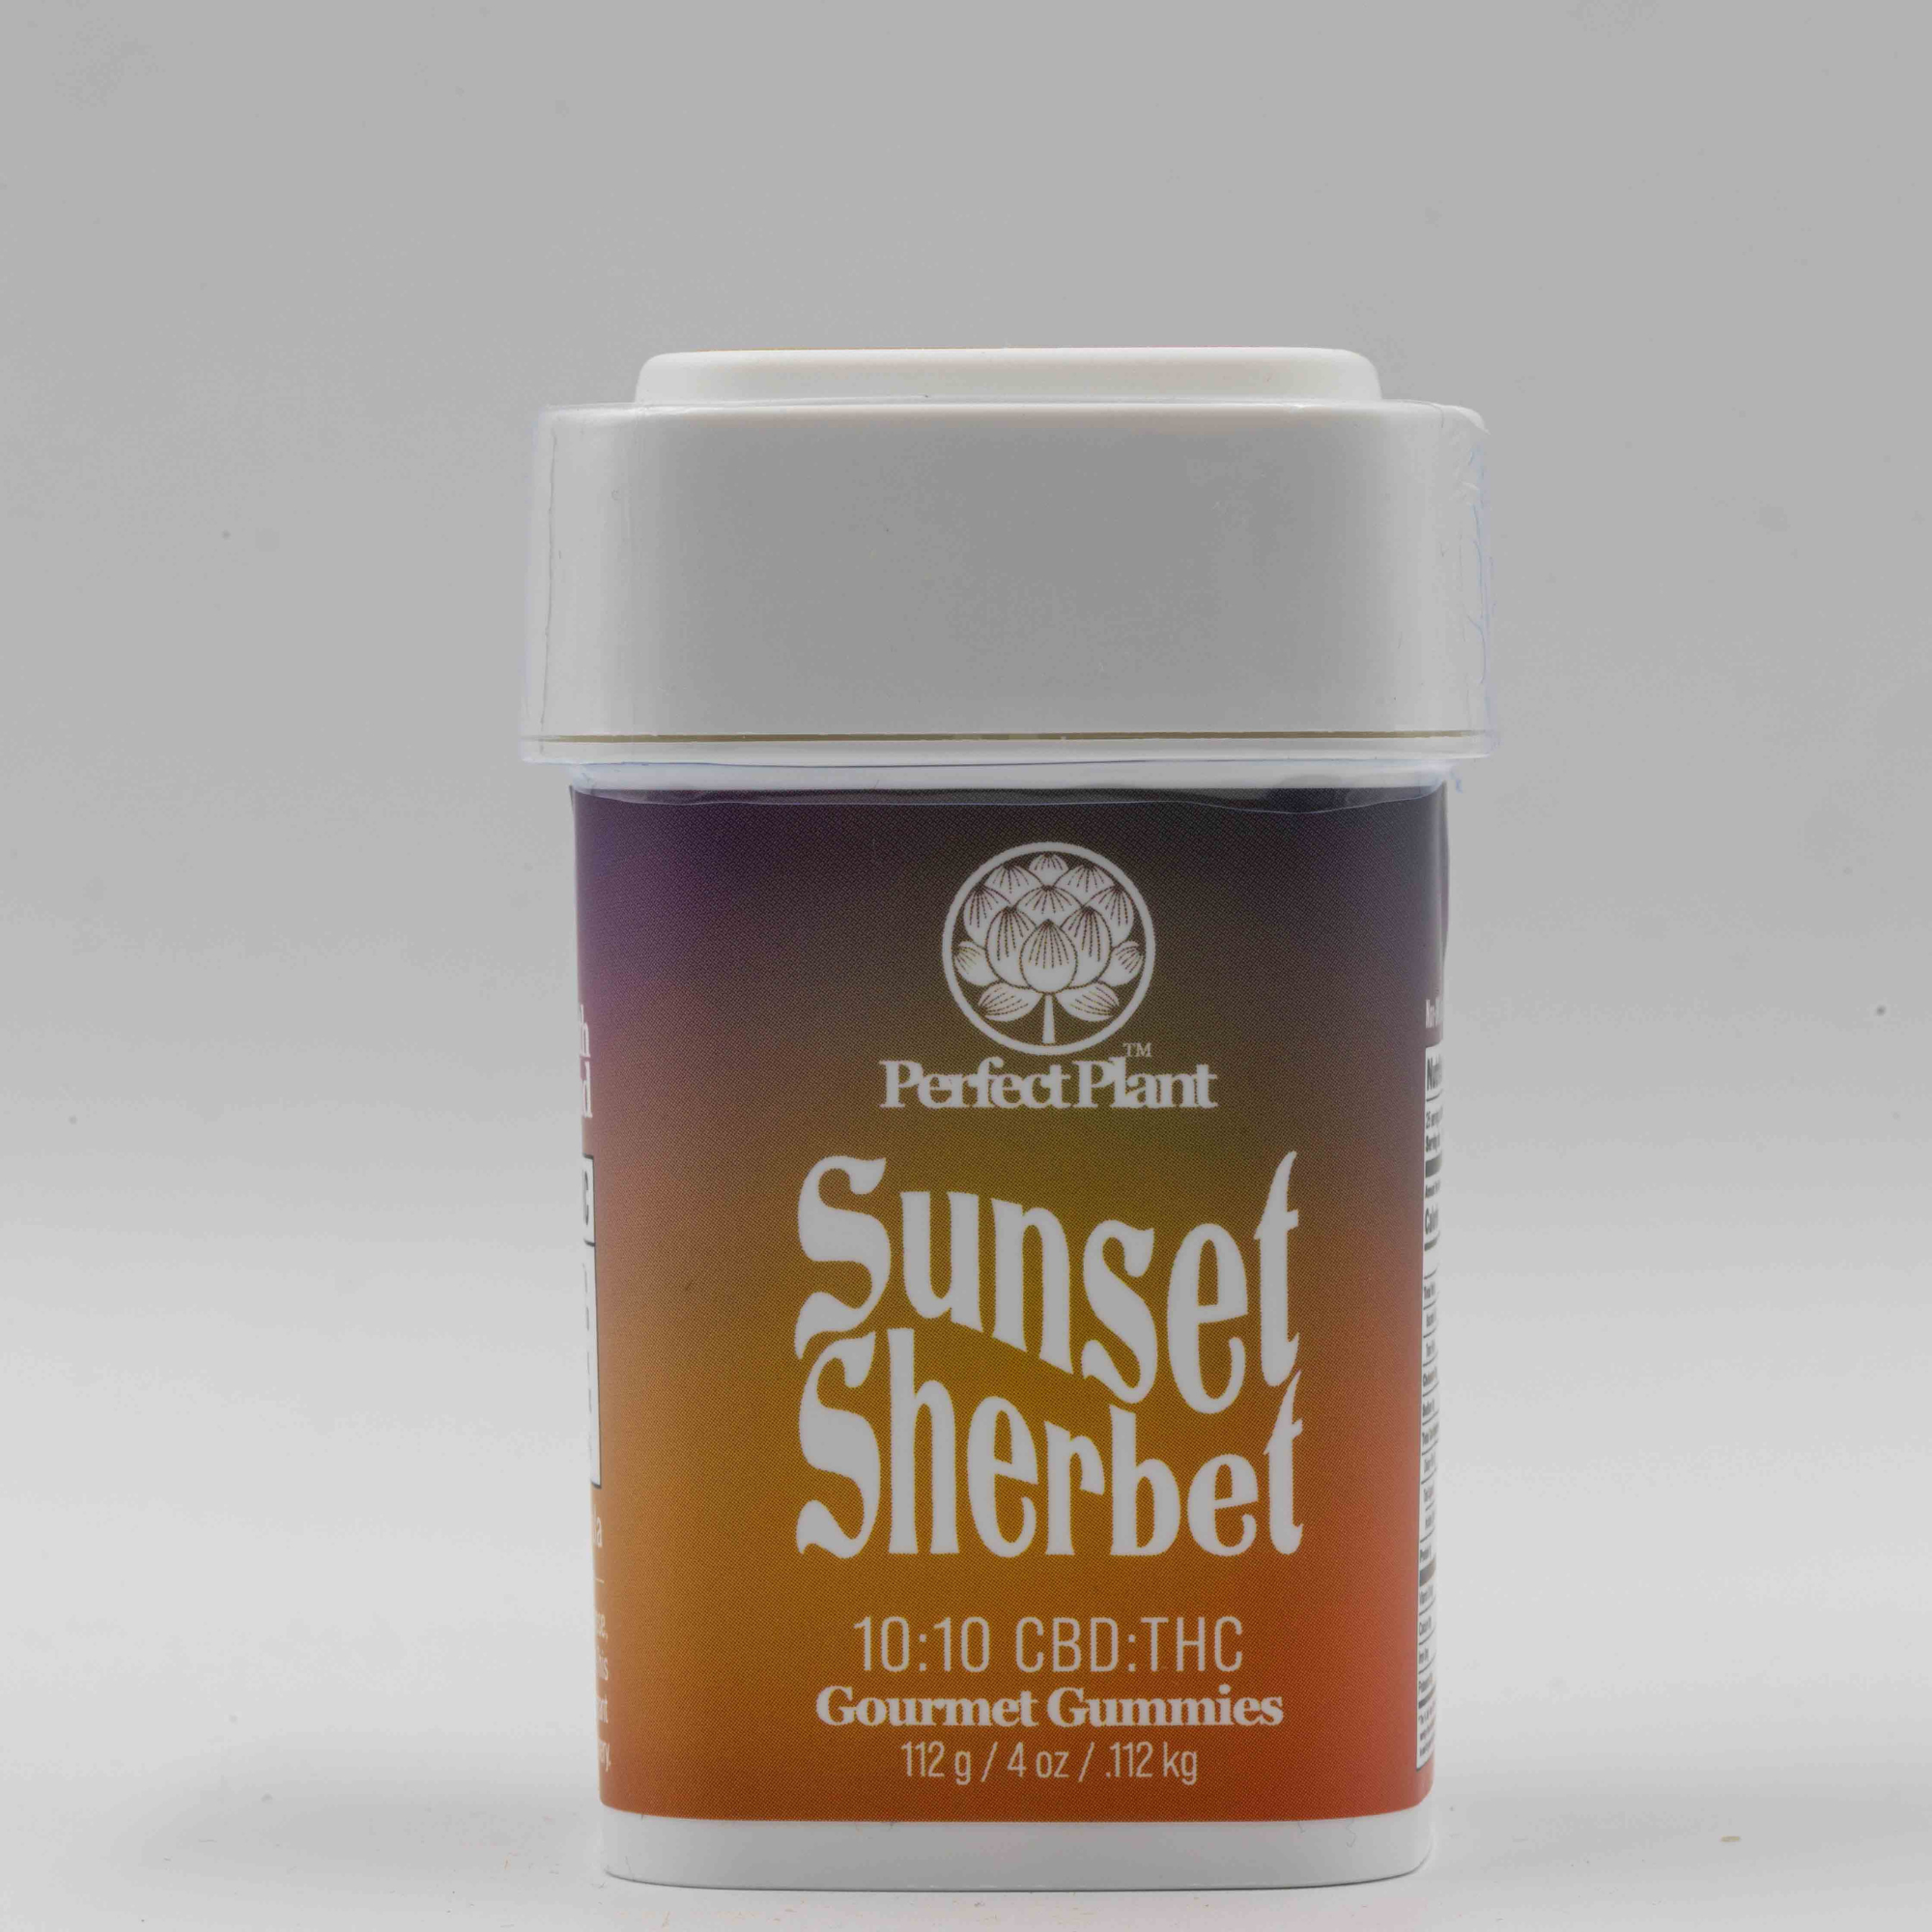 Sunset Sherbert - Gourmet Gummies (10:10 CBD:THC)